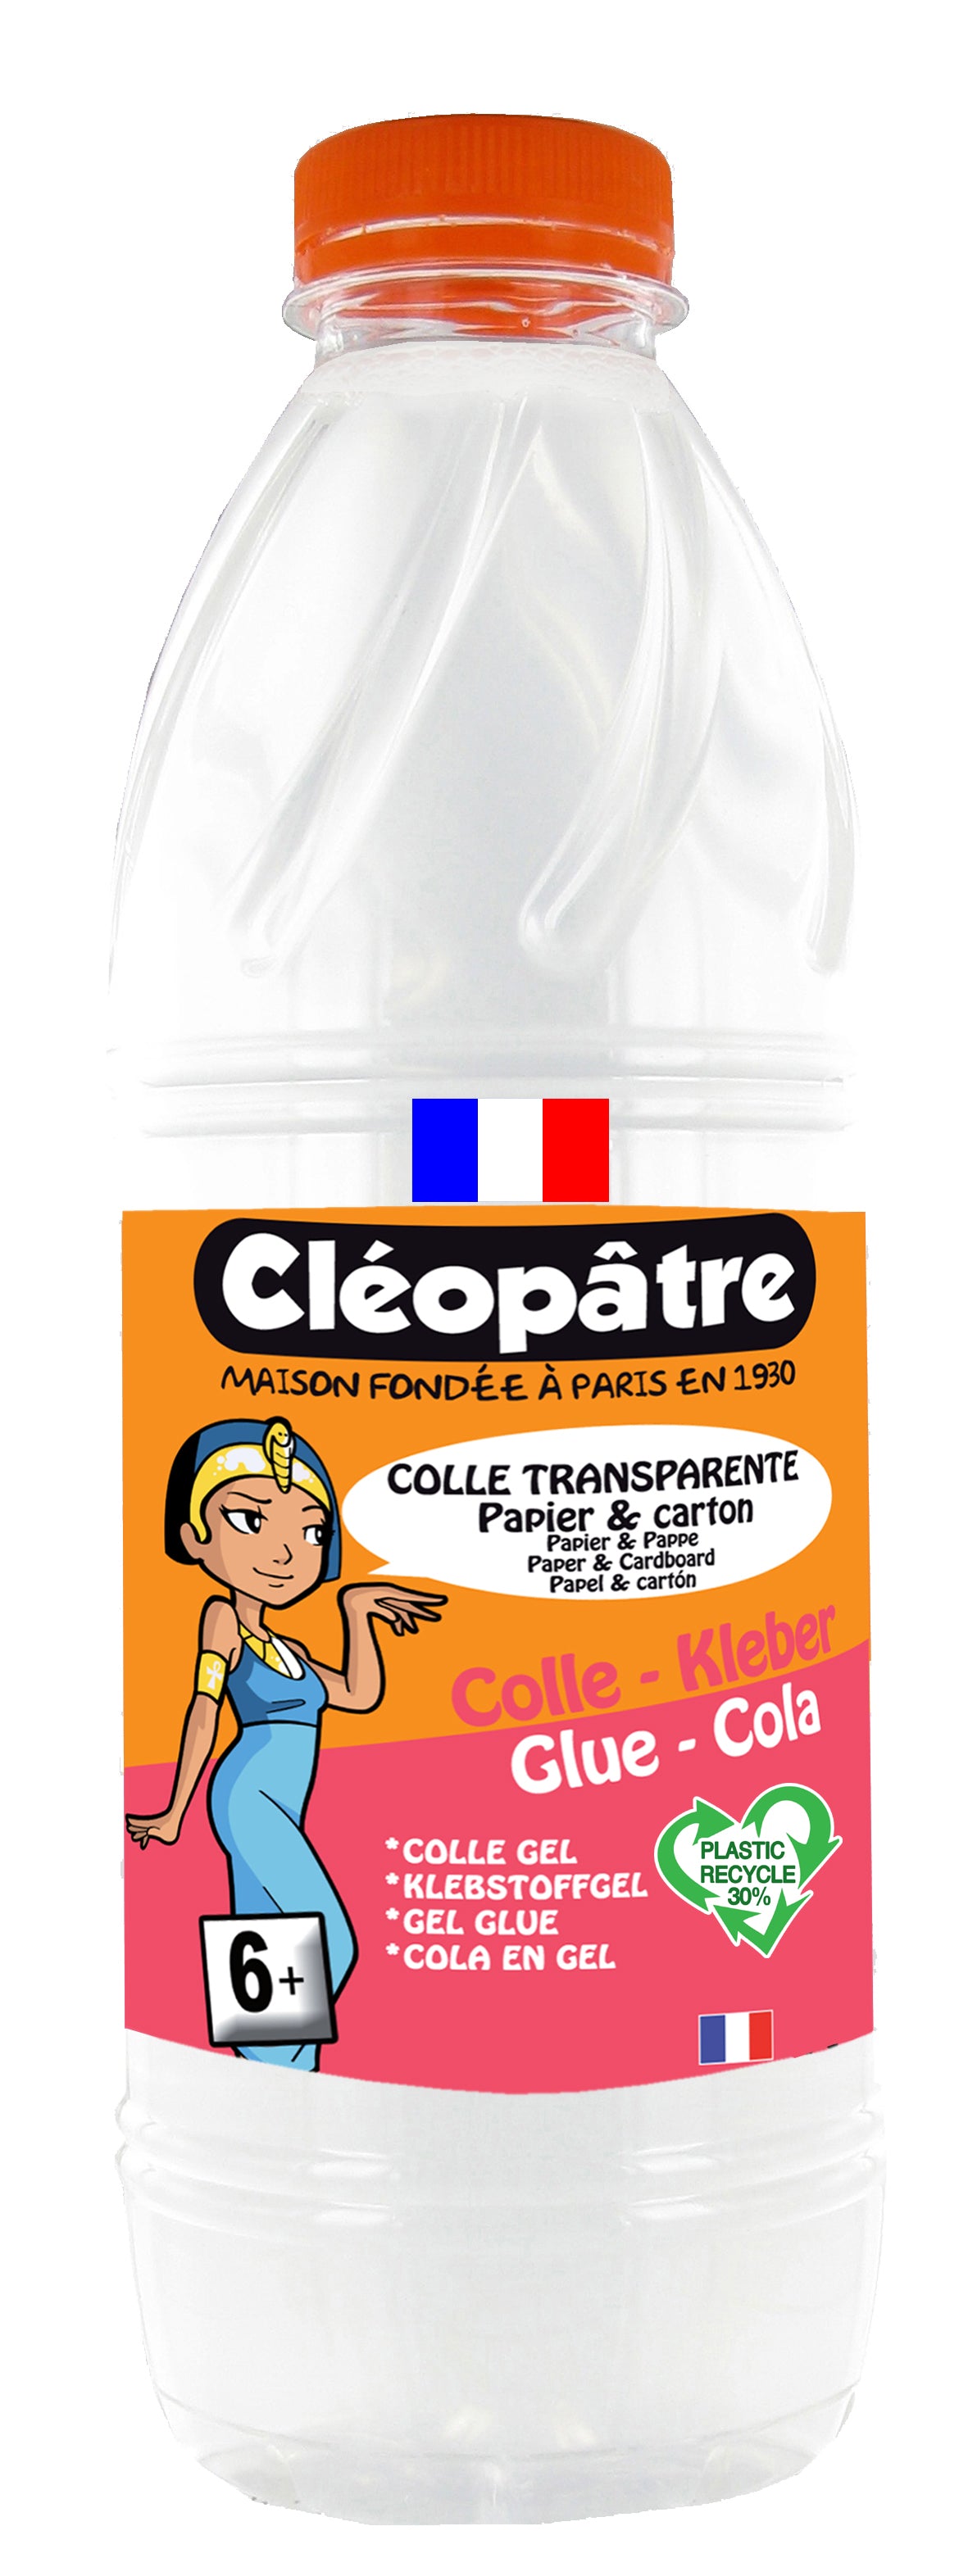 Cléopâtre colle transparente liquide flacon 2kg